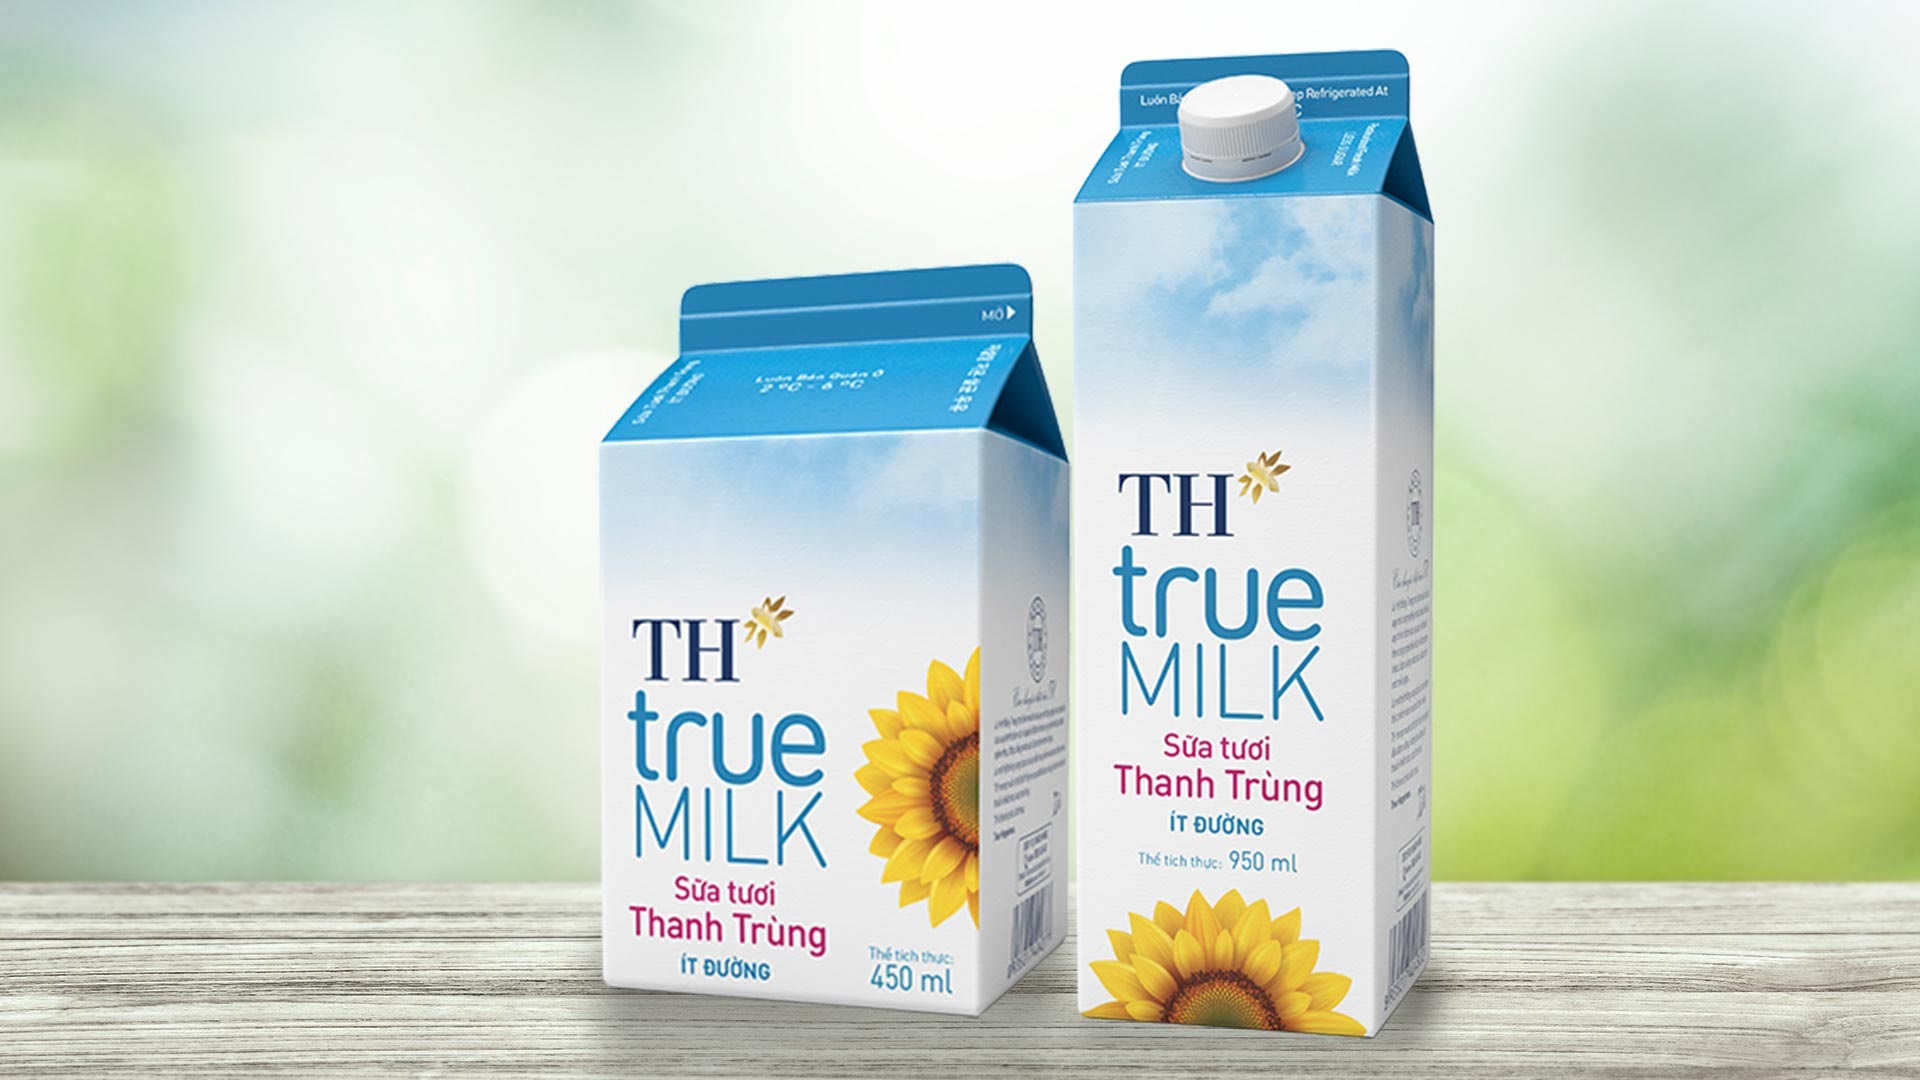 VinID Voucher tung ưu đãi của TH True MILK mua 1 tặng 1 sữa tươi thanh